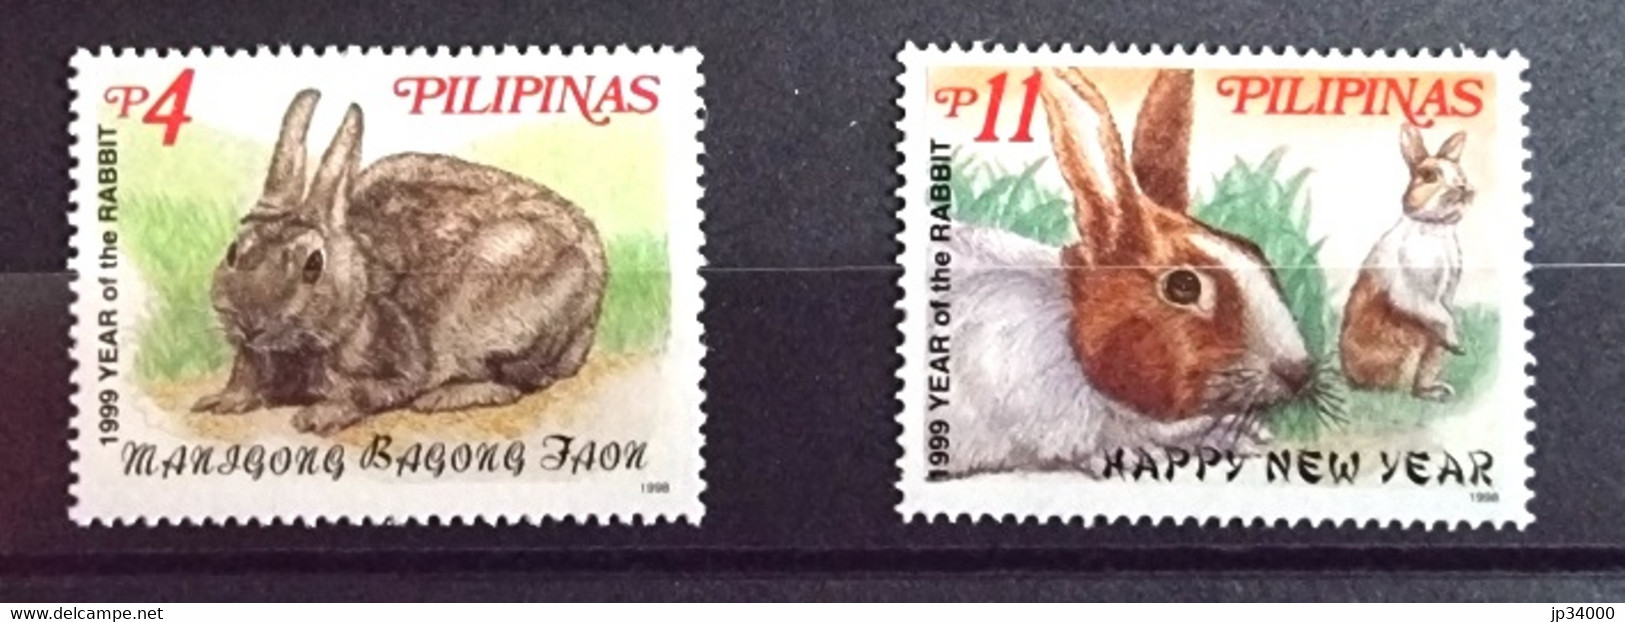 PHILIPPINES-PILIPINAS Lapins, Lapin, Rabbit, Conejo. Année Du Lapin 1999 2 Valeurs Dentelé. ** Neuf Sans Charnière - Conejos